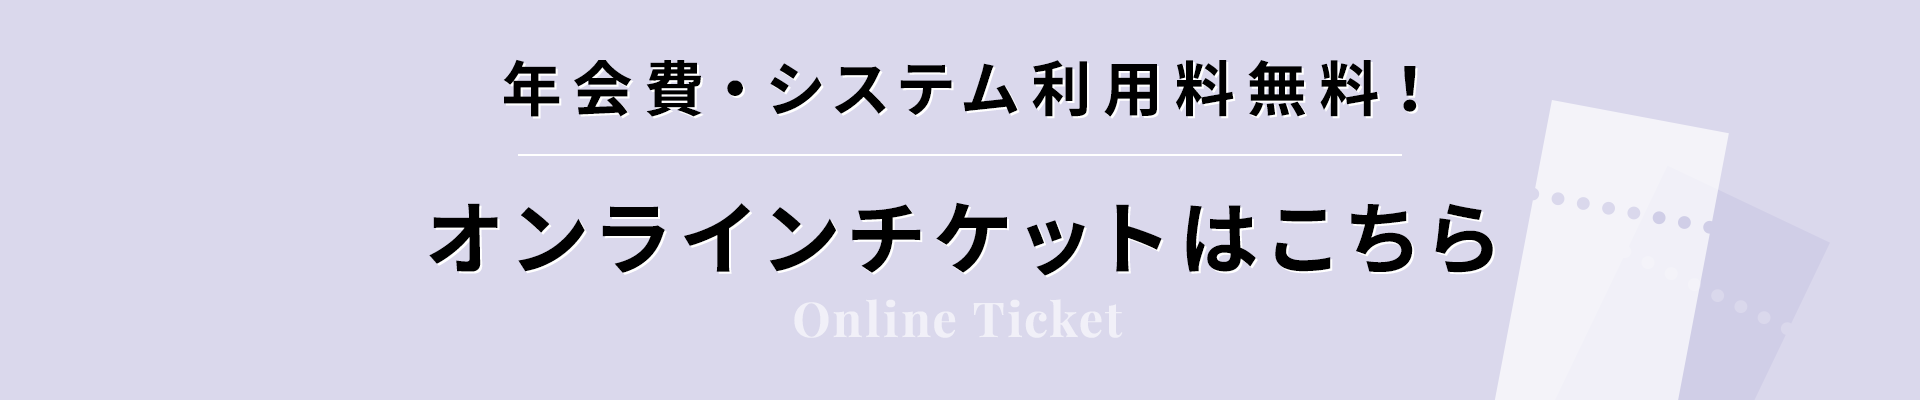 オンラインチケット